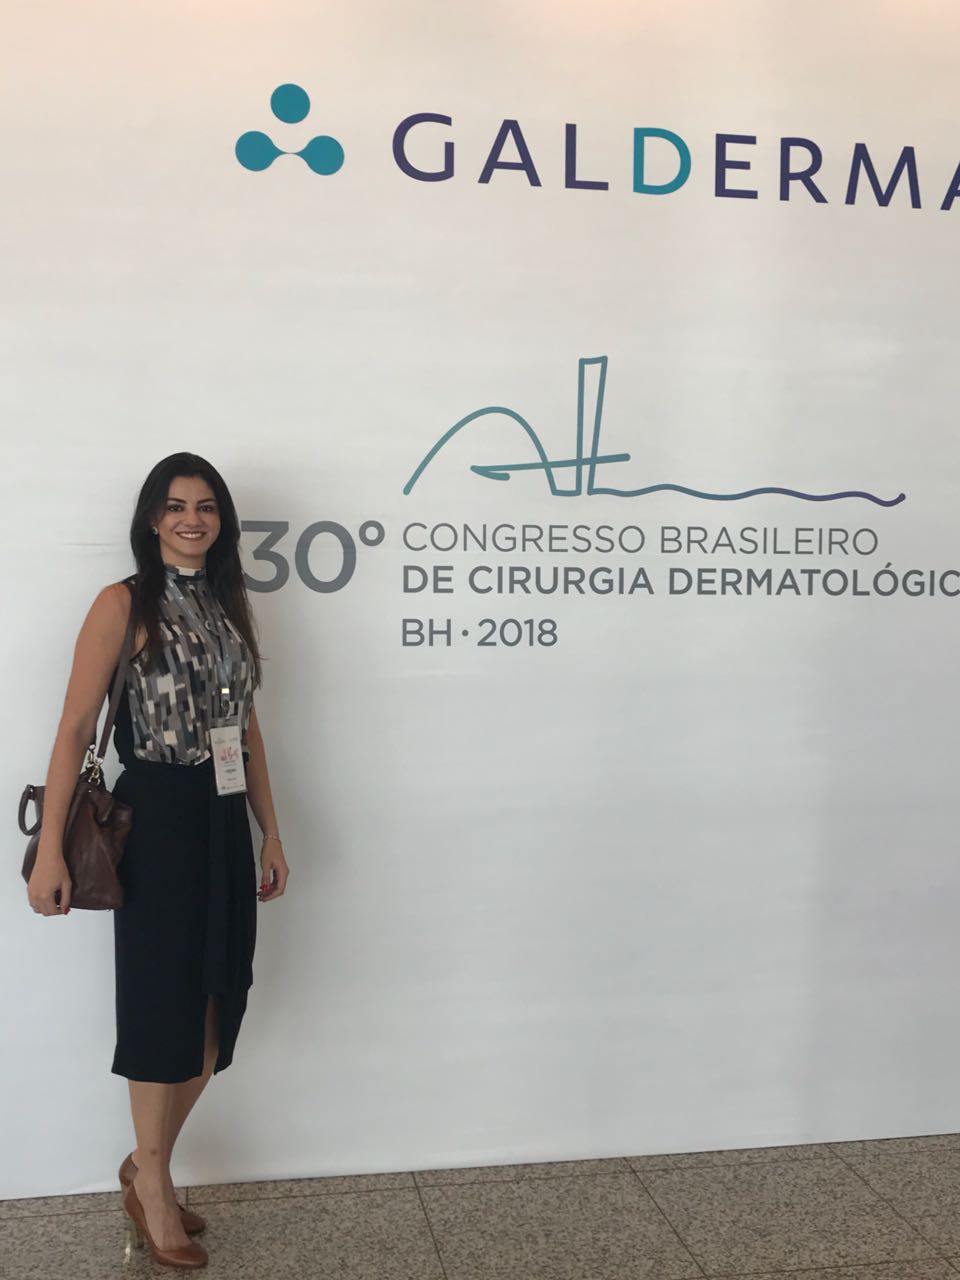 30° Congresso de cirurgia dermatológica